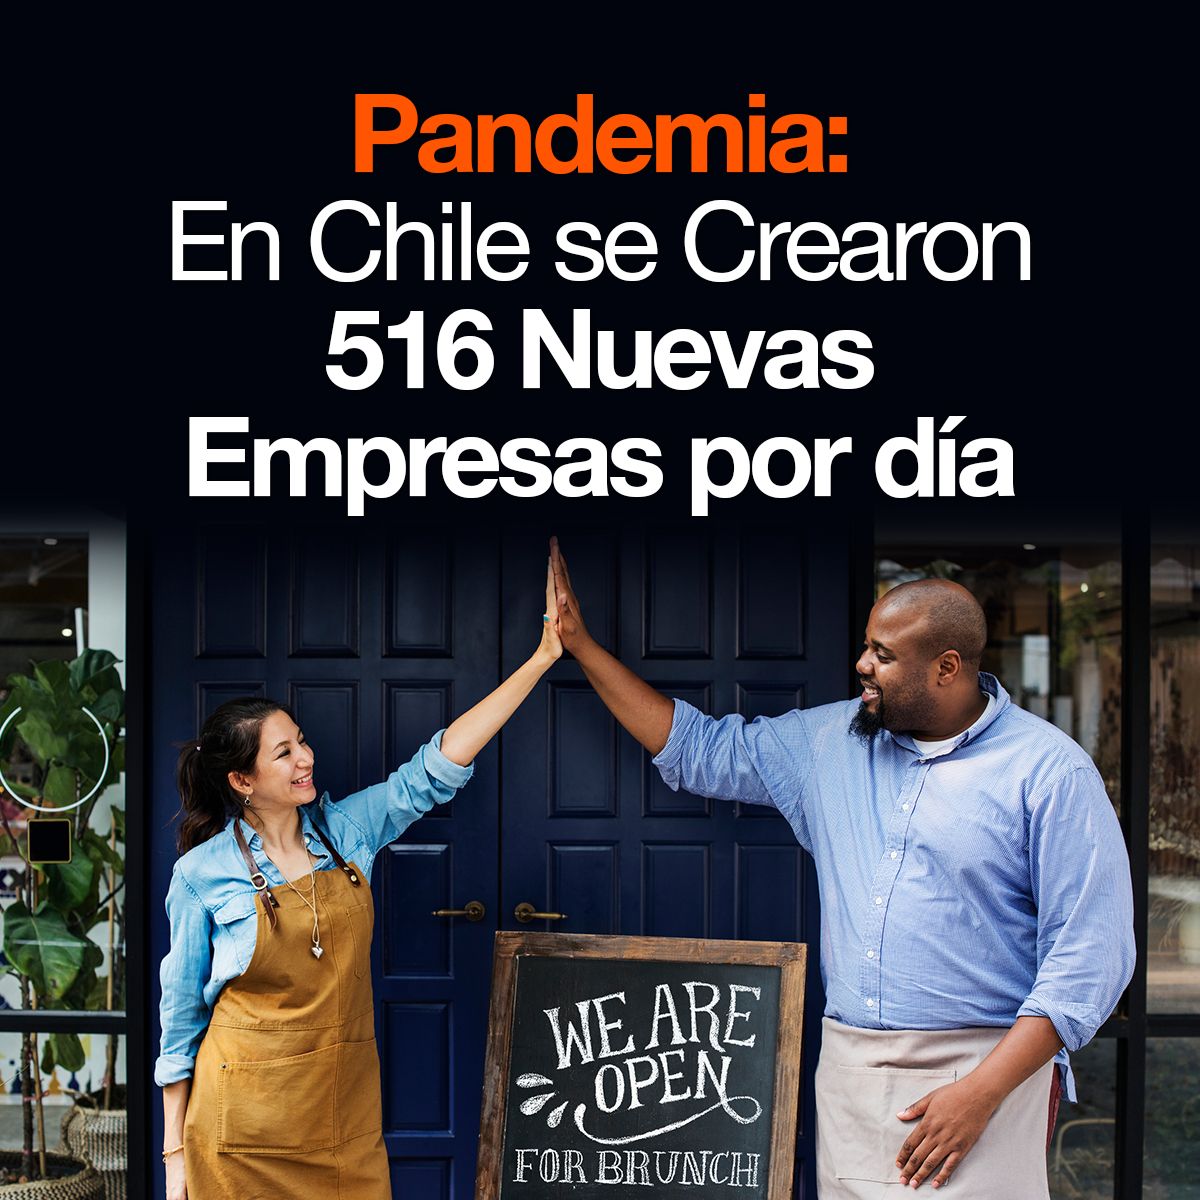 Pandemia: En Chile se Crearon 516 Nuevas Empresas por día